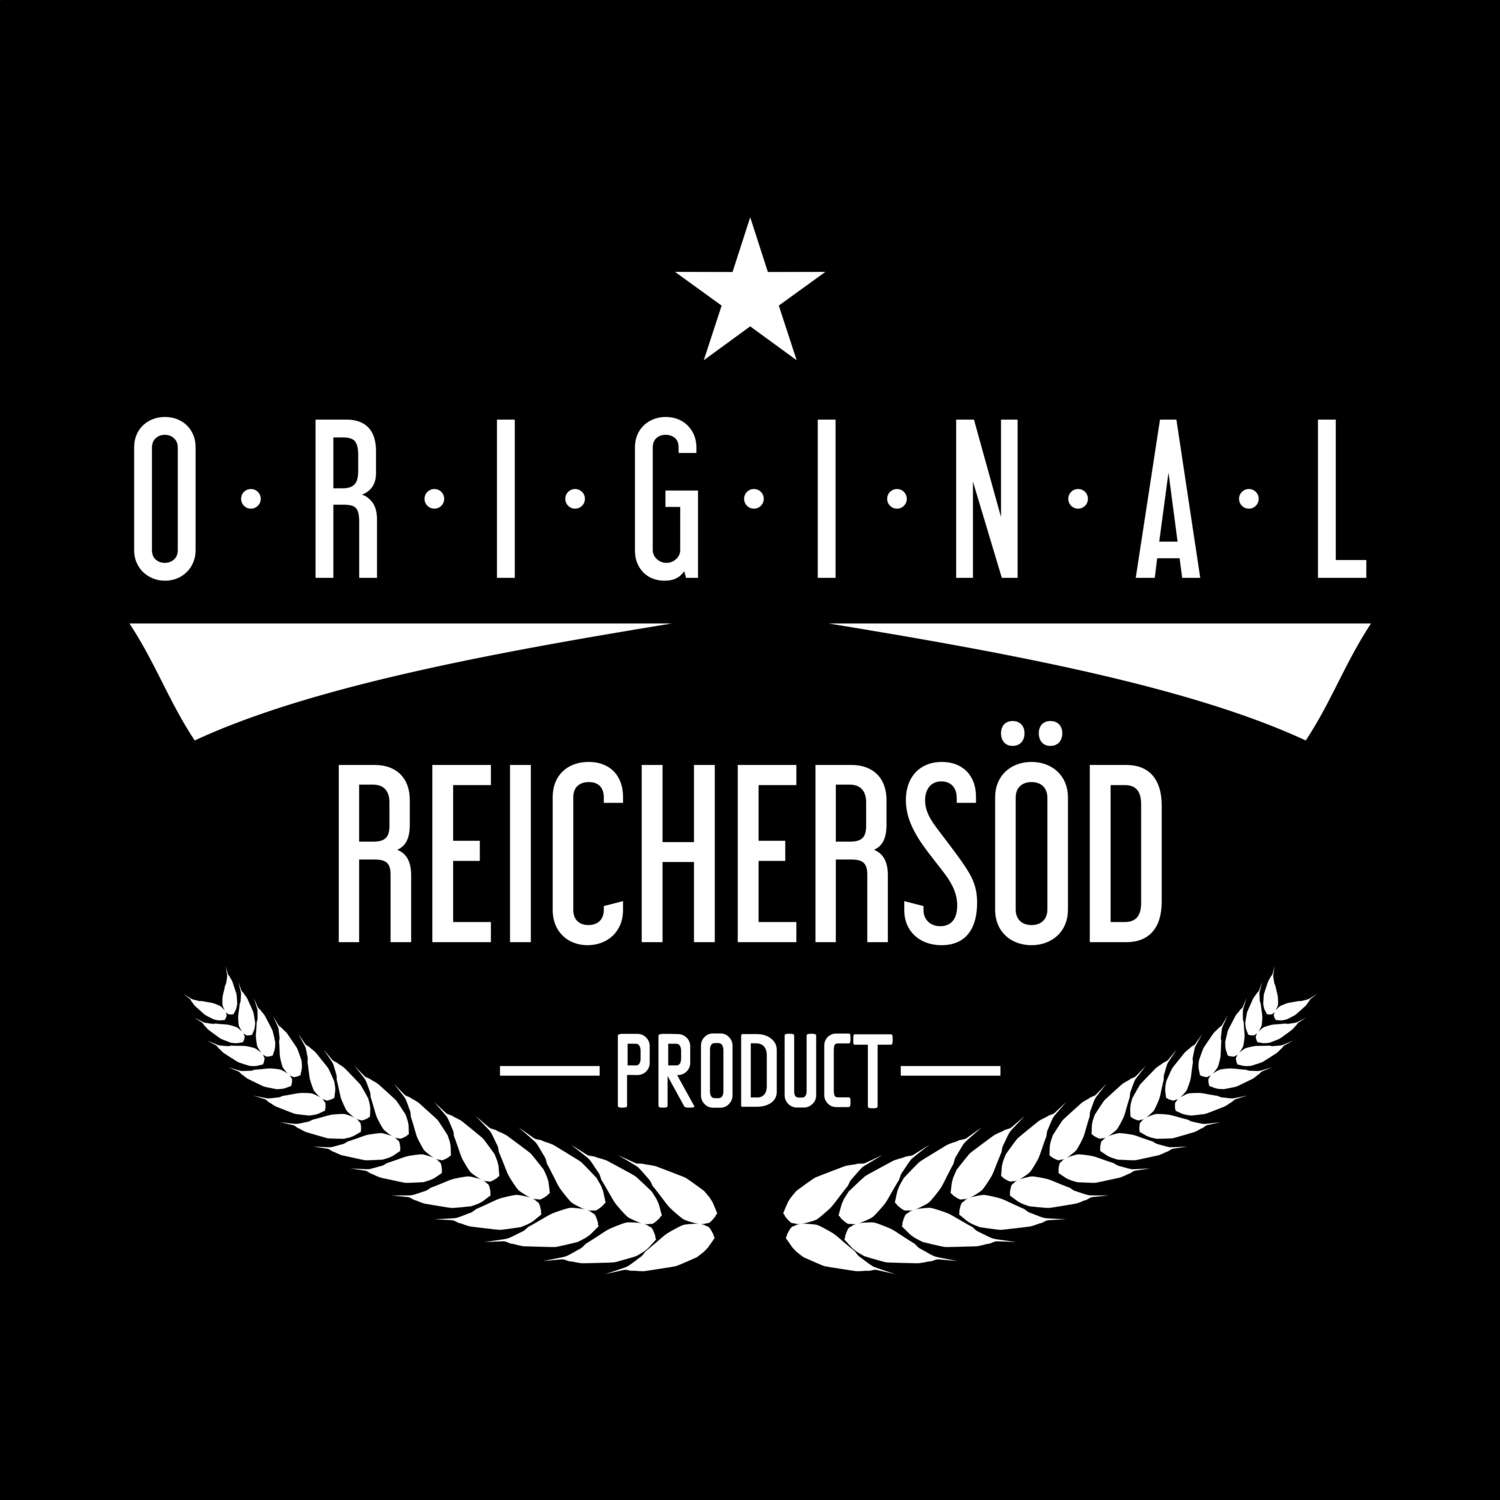 Reichersöd T-Shirt »Original Product«